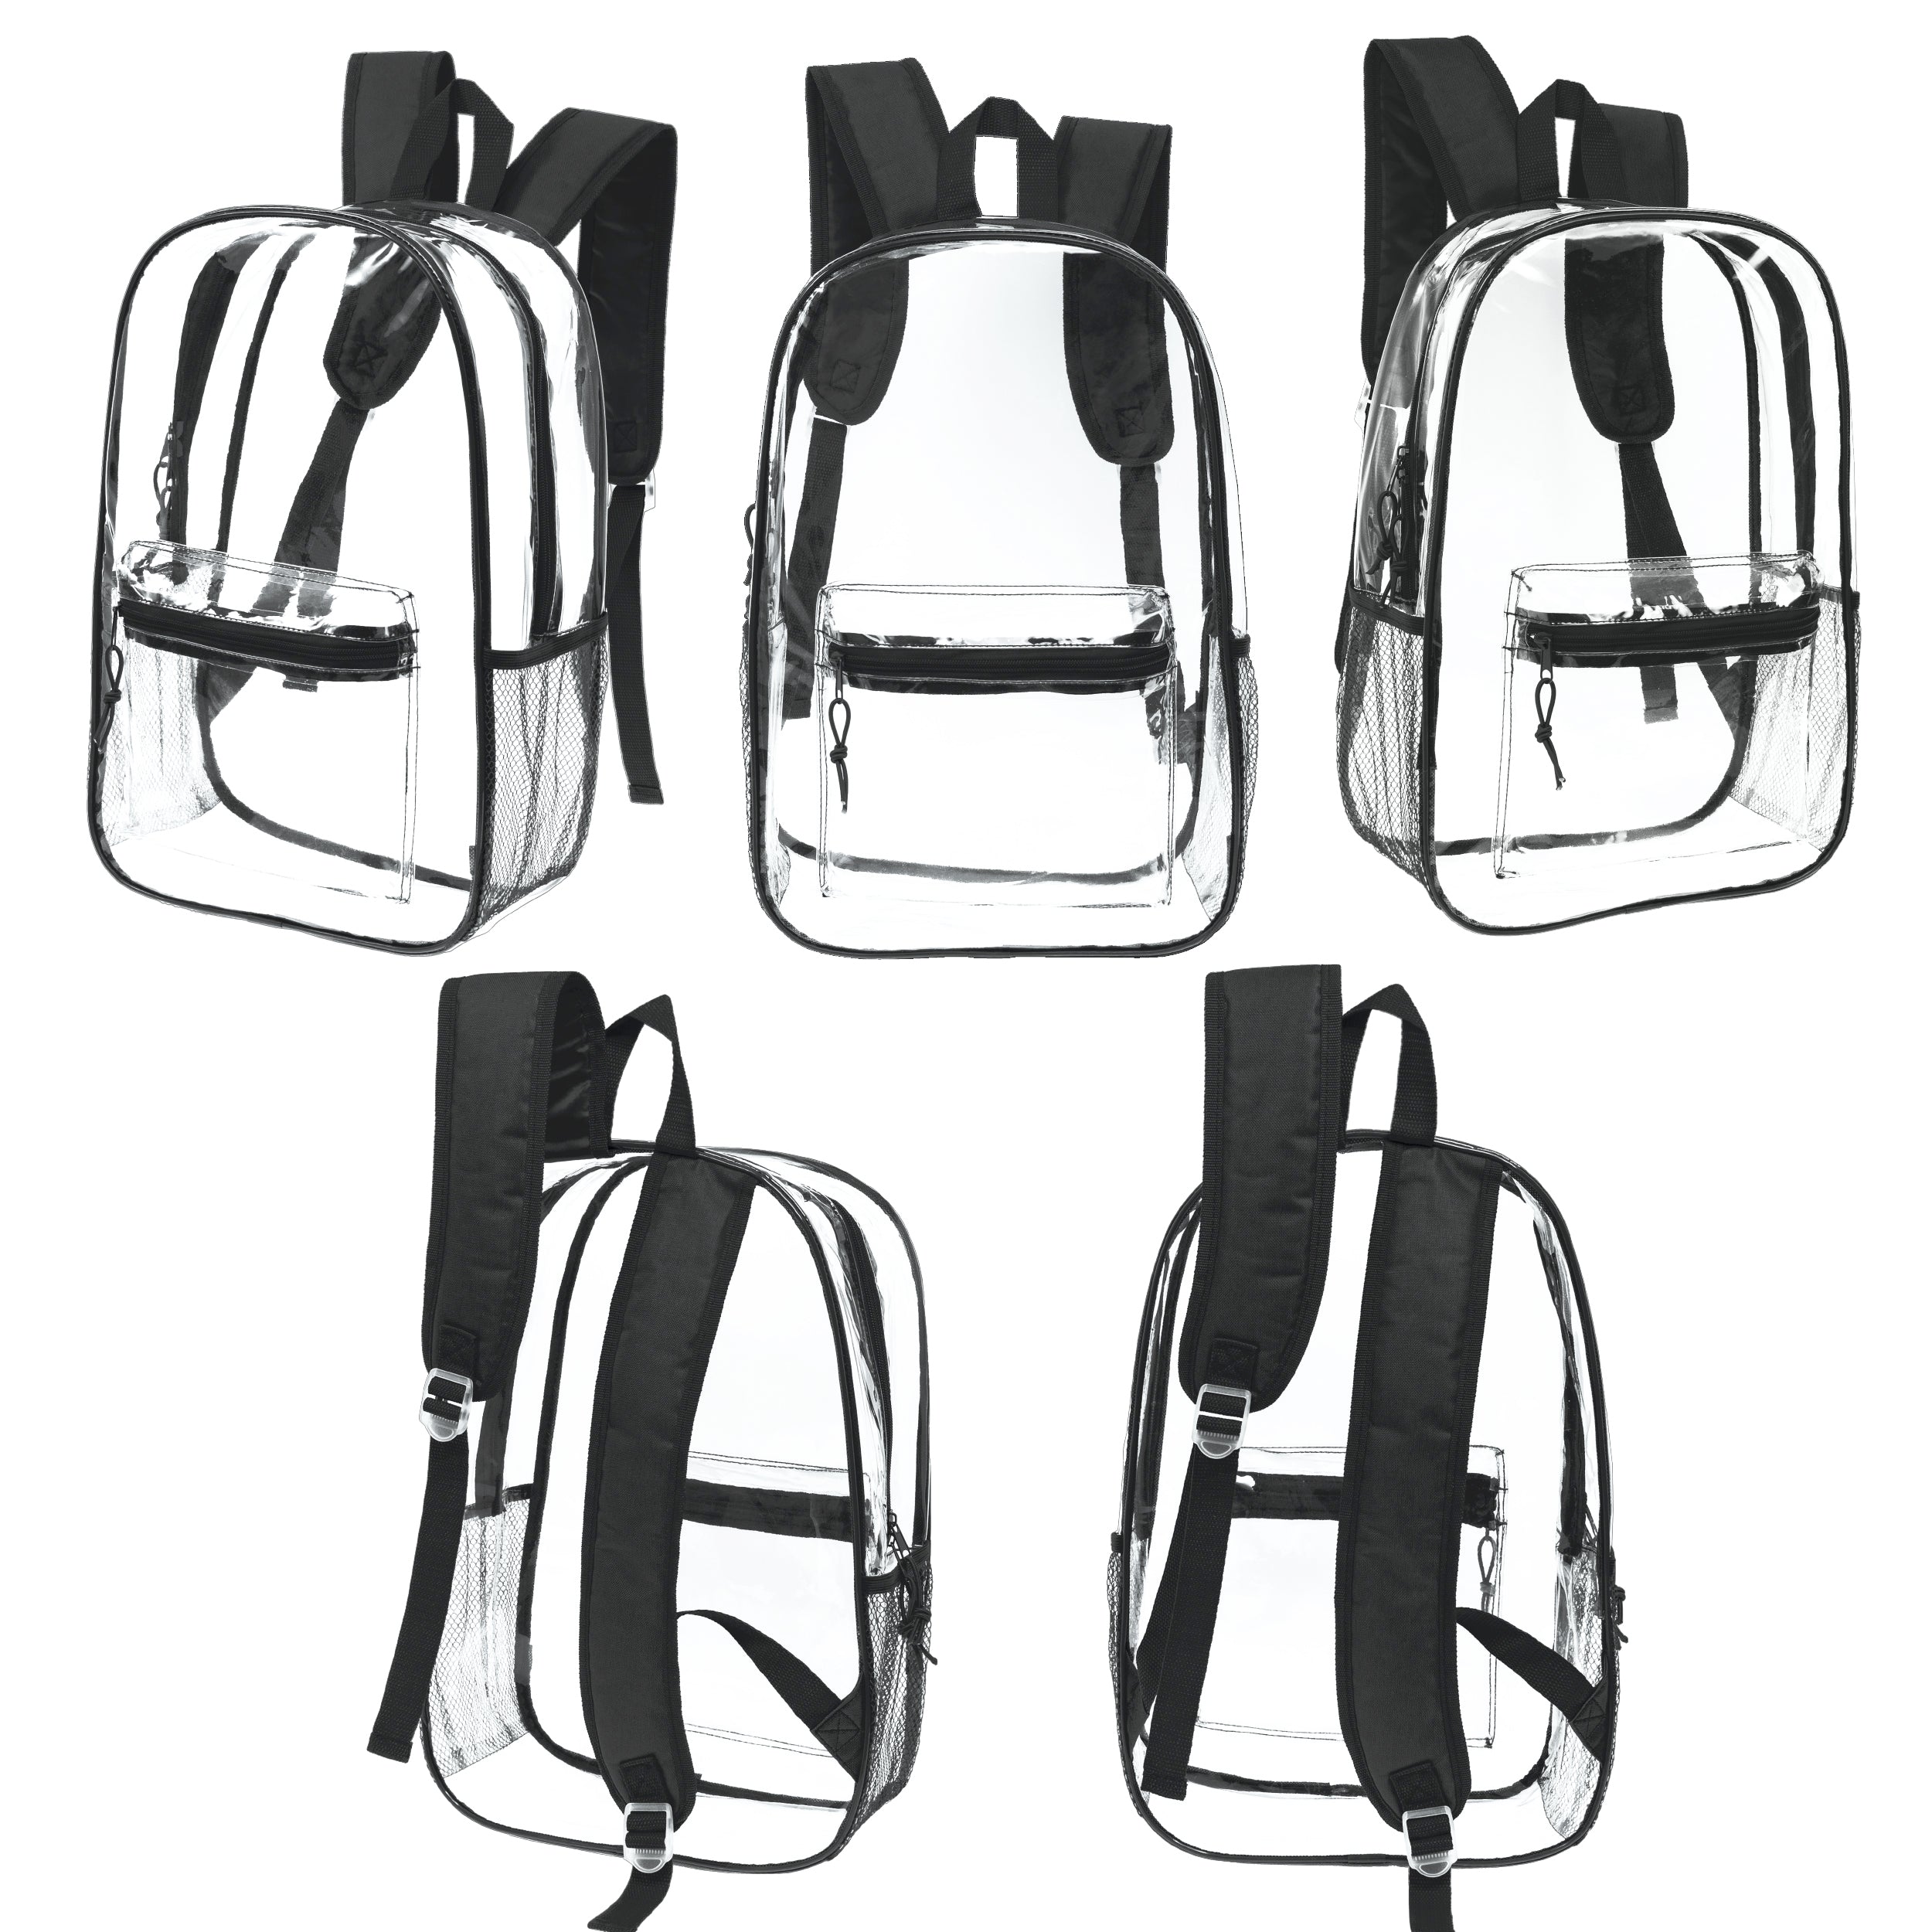 17" Transparent Wholesale Backpack in Black With Side Pocket - Bulk Case of 24